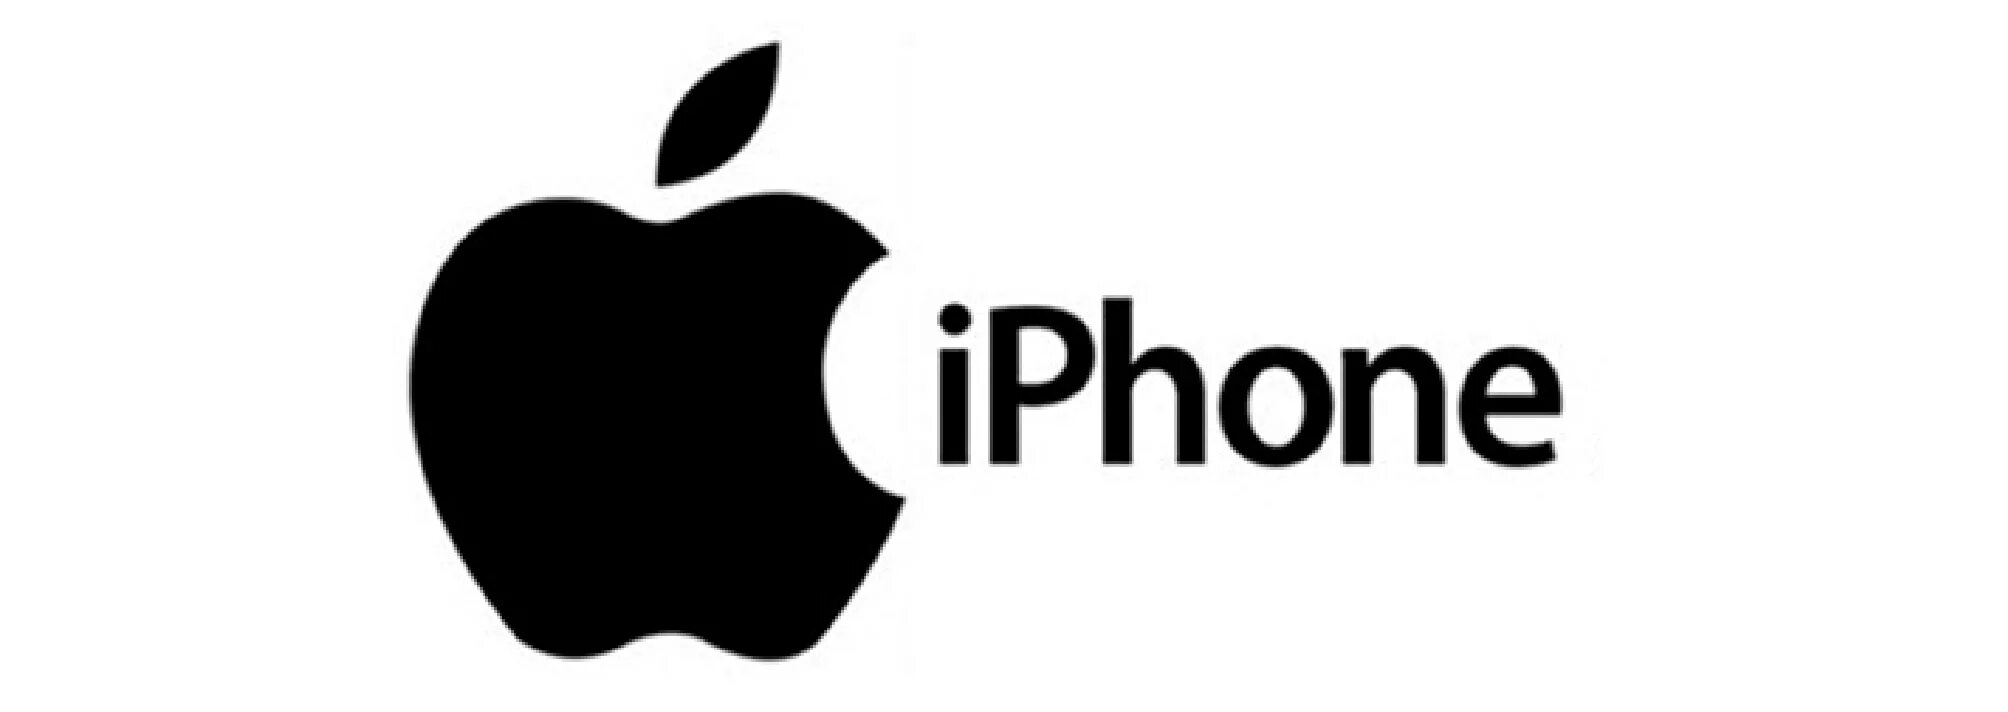 Эмблема айфона. Надпись айфон. Торговая марка Apple. Товарный знак айфон. Картинка надпись айфона